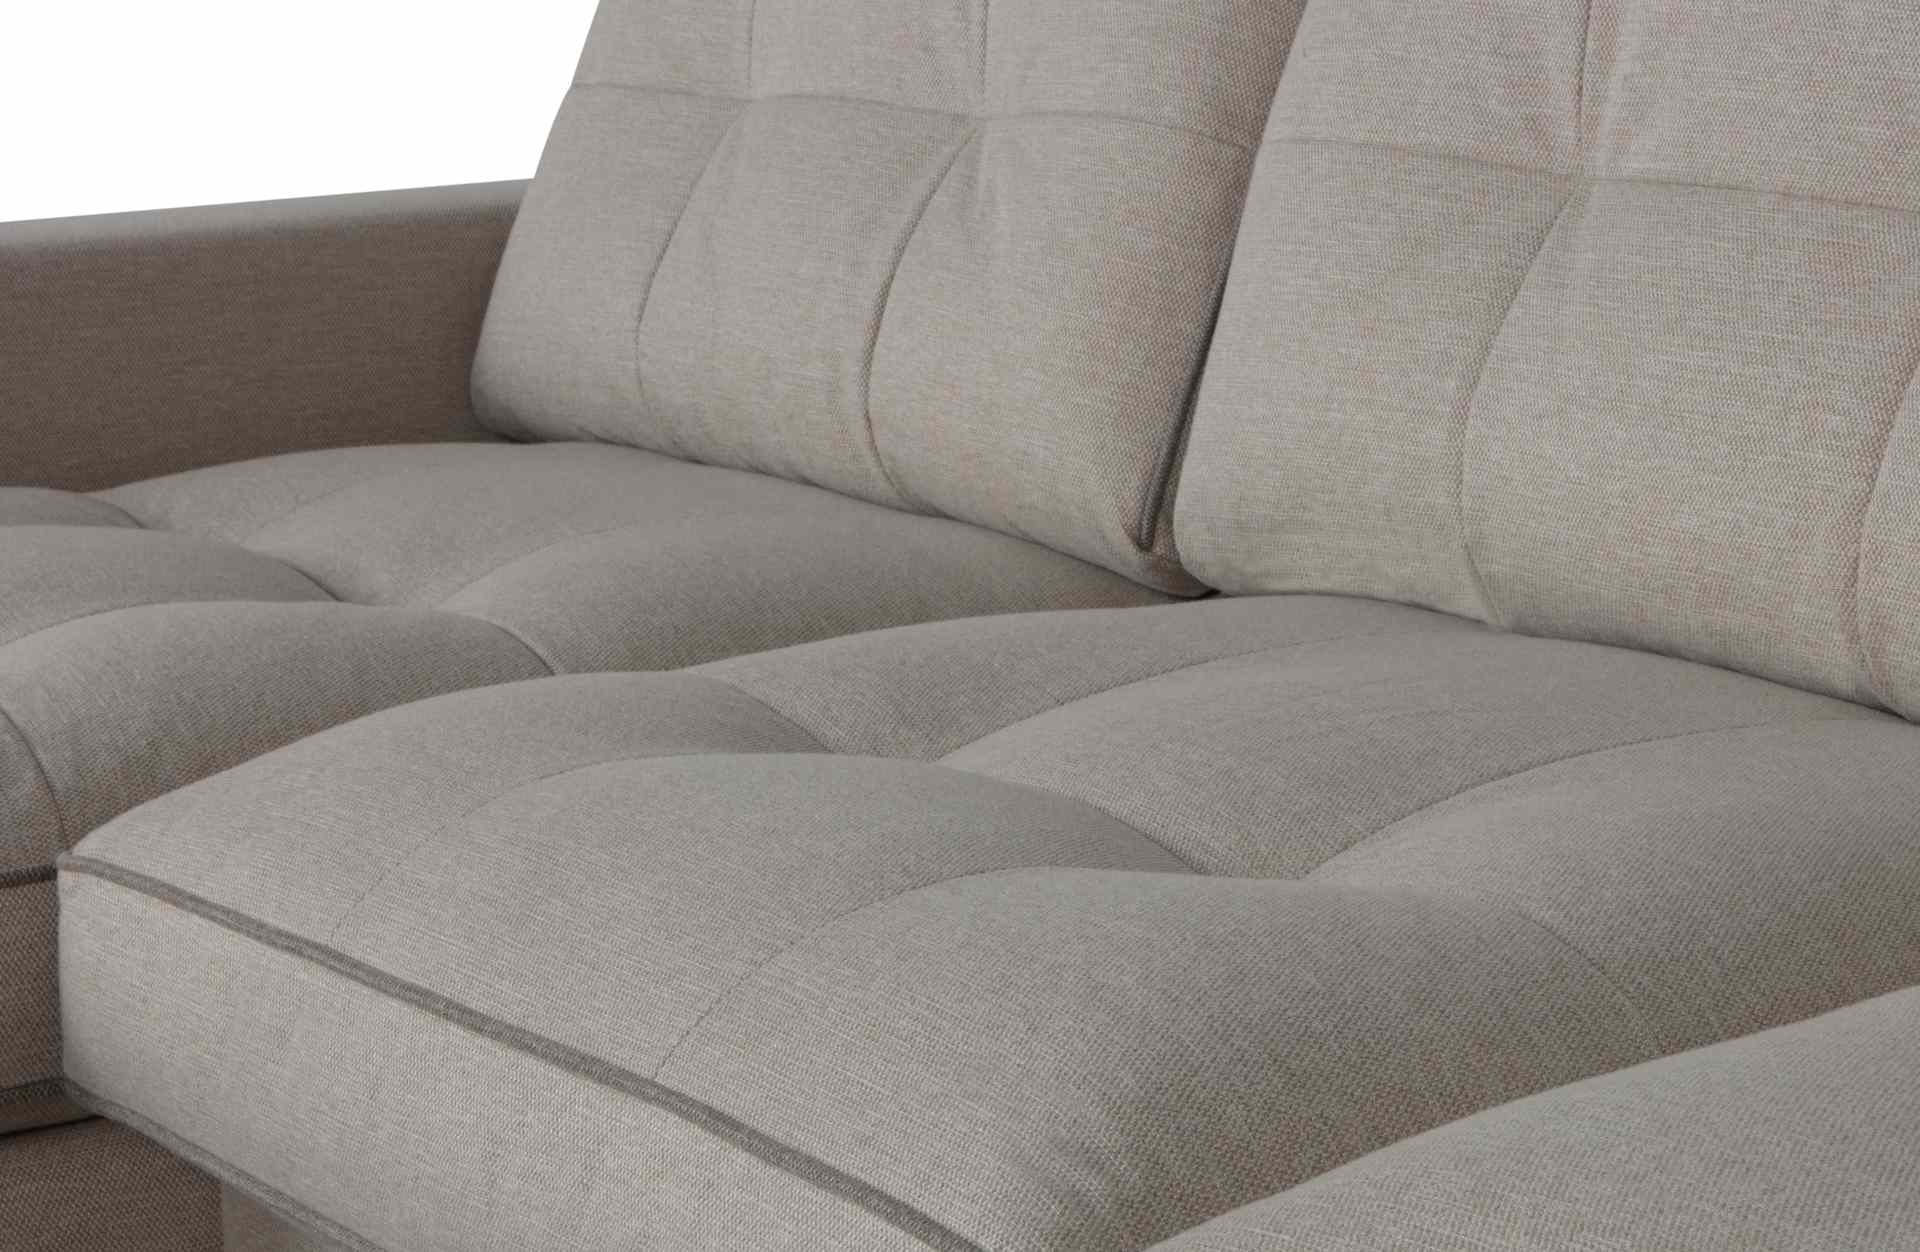 Das Ecksofa Lisa überzeugt mit seinem klassischen Design. Gefertigt wurde es aus Kunststofffasern, welche einen einen grauen Farbton besitzen. Die Ausführung des Sofas ist Links. Die Sitzhöhe beträgt 51 cm.